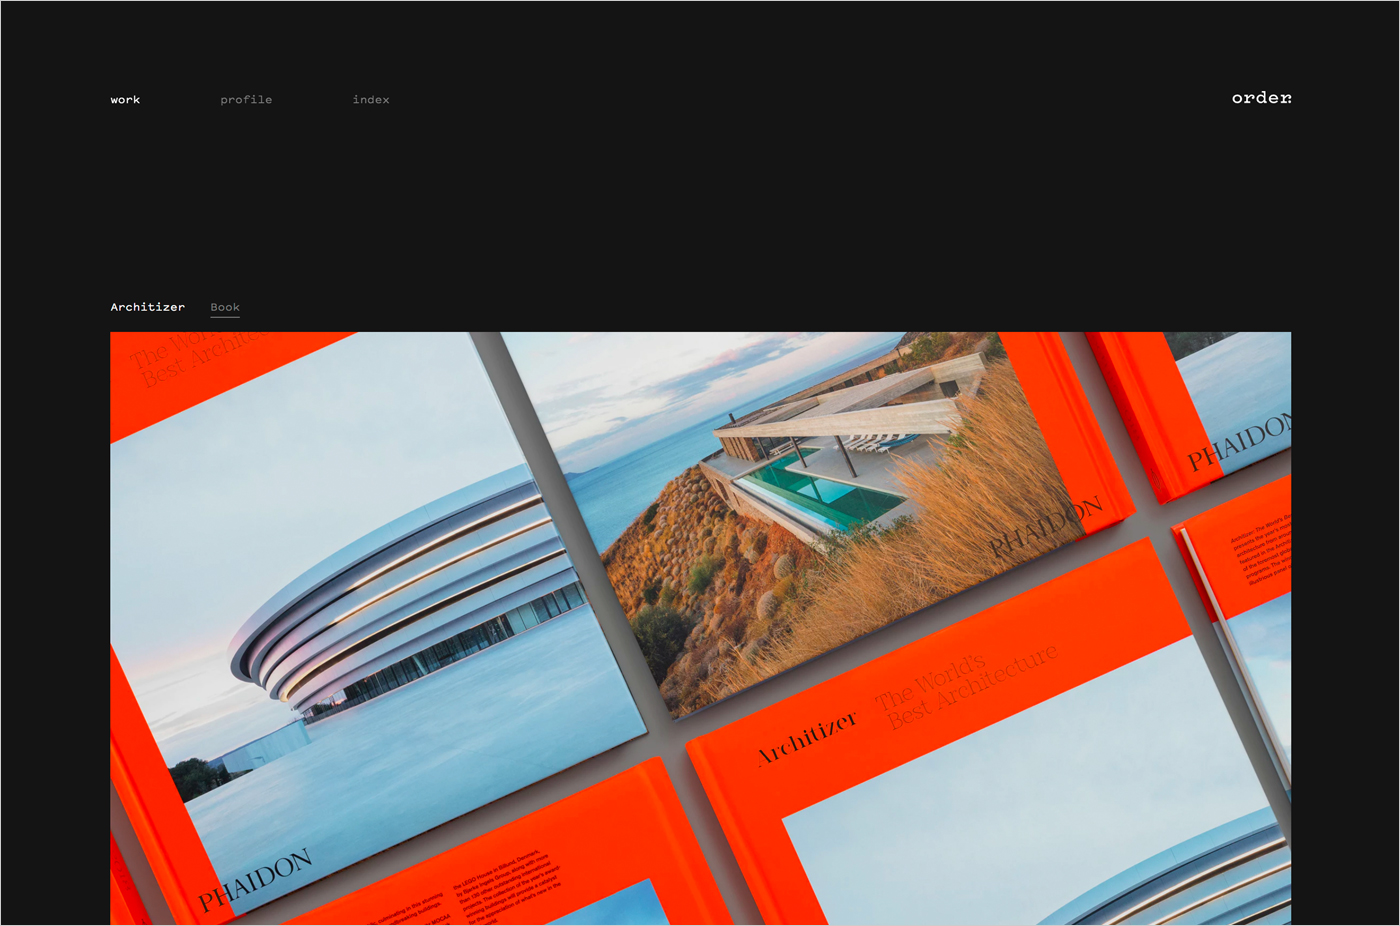 Order – Designウェブサイトの画面キャプチャ画像